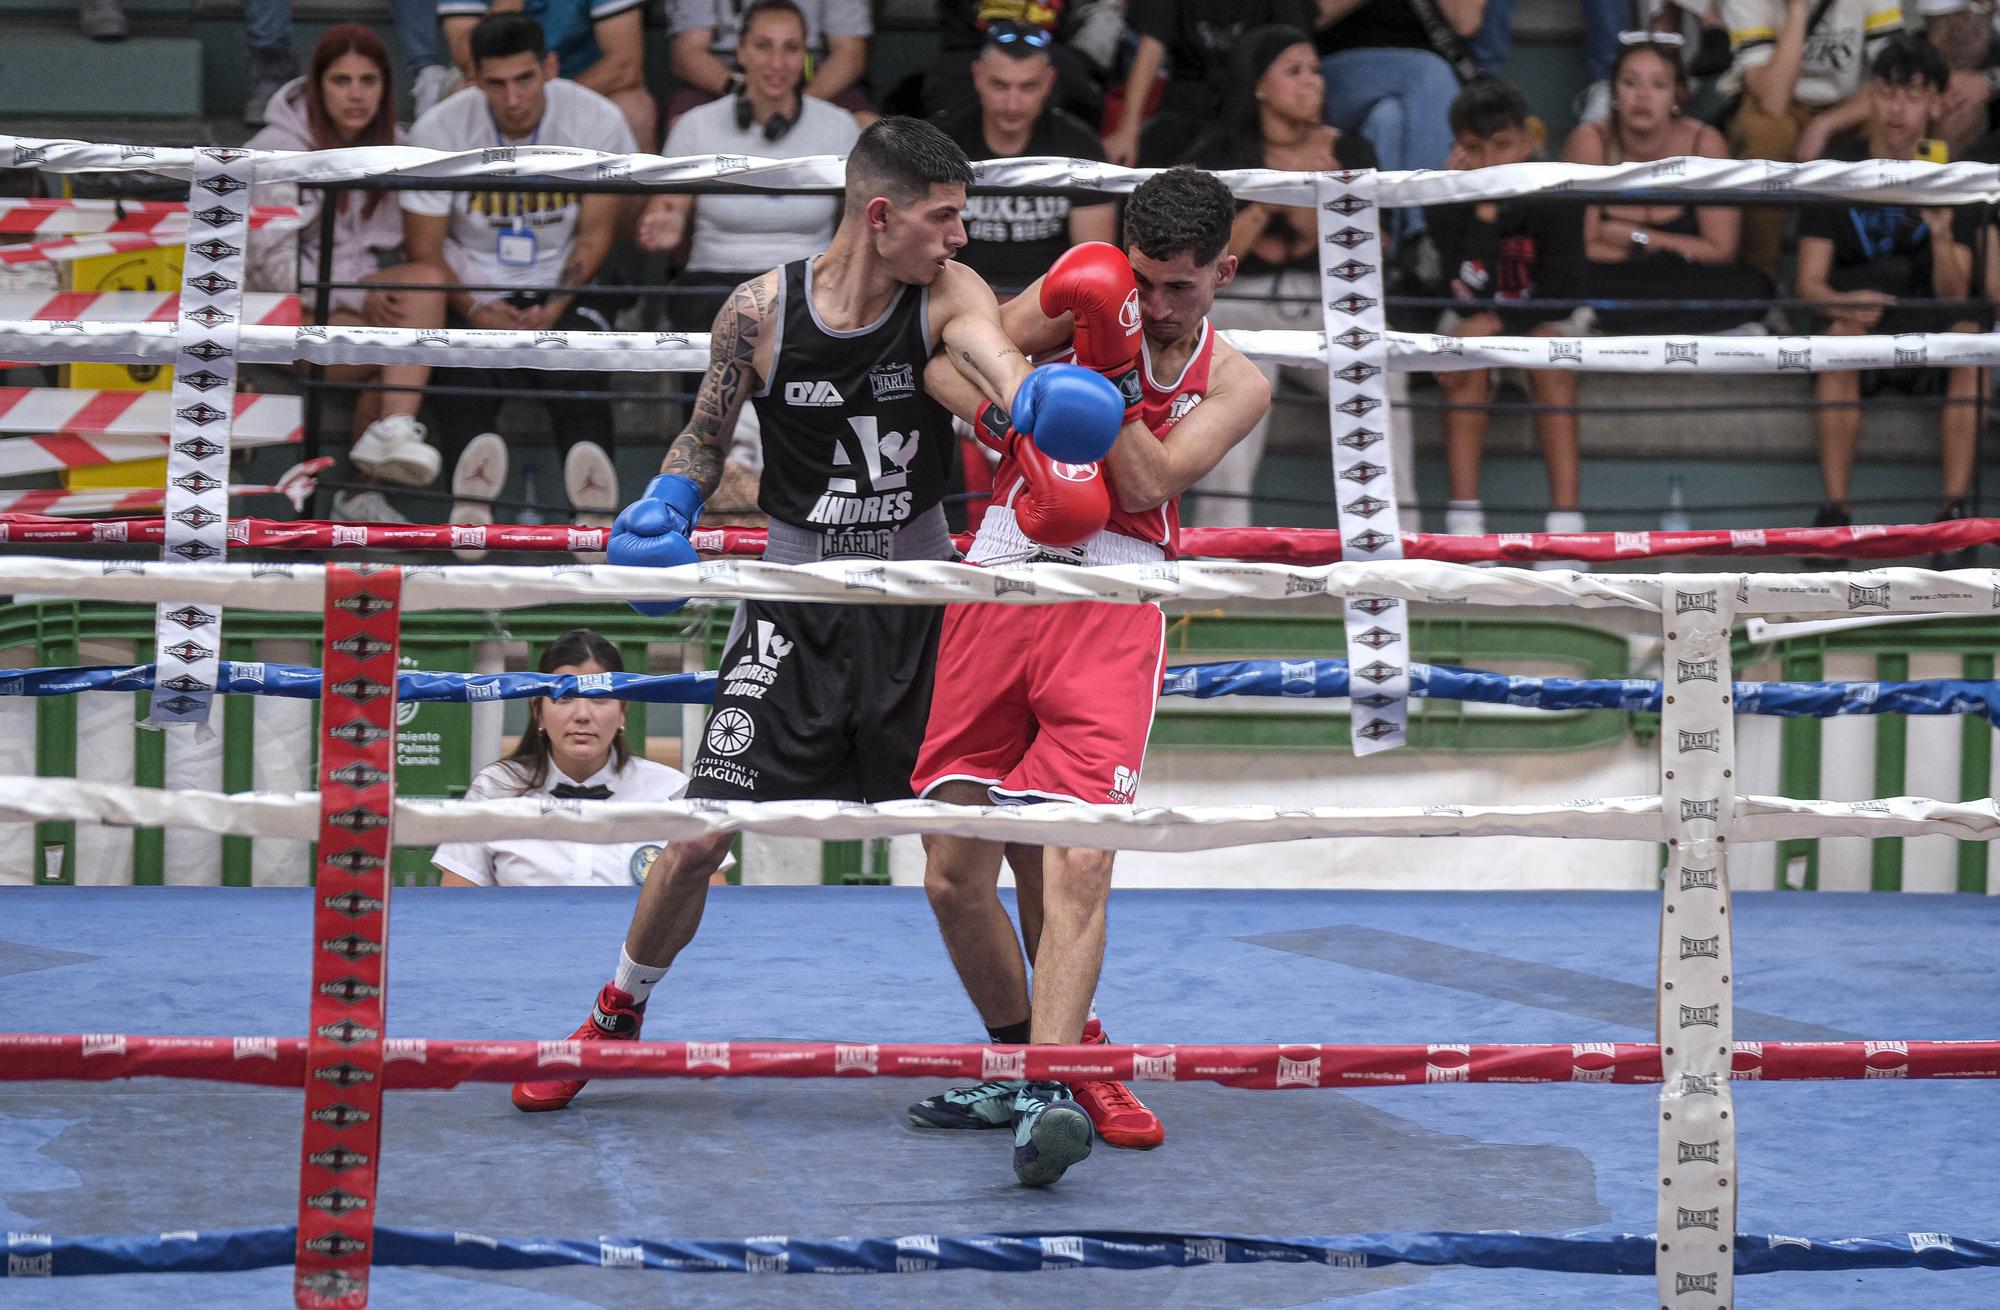 Campeonato de Canarias de Boxeo en el Pabellón Juan Beltrán Sietta